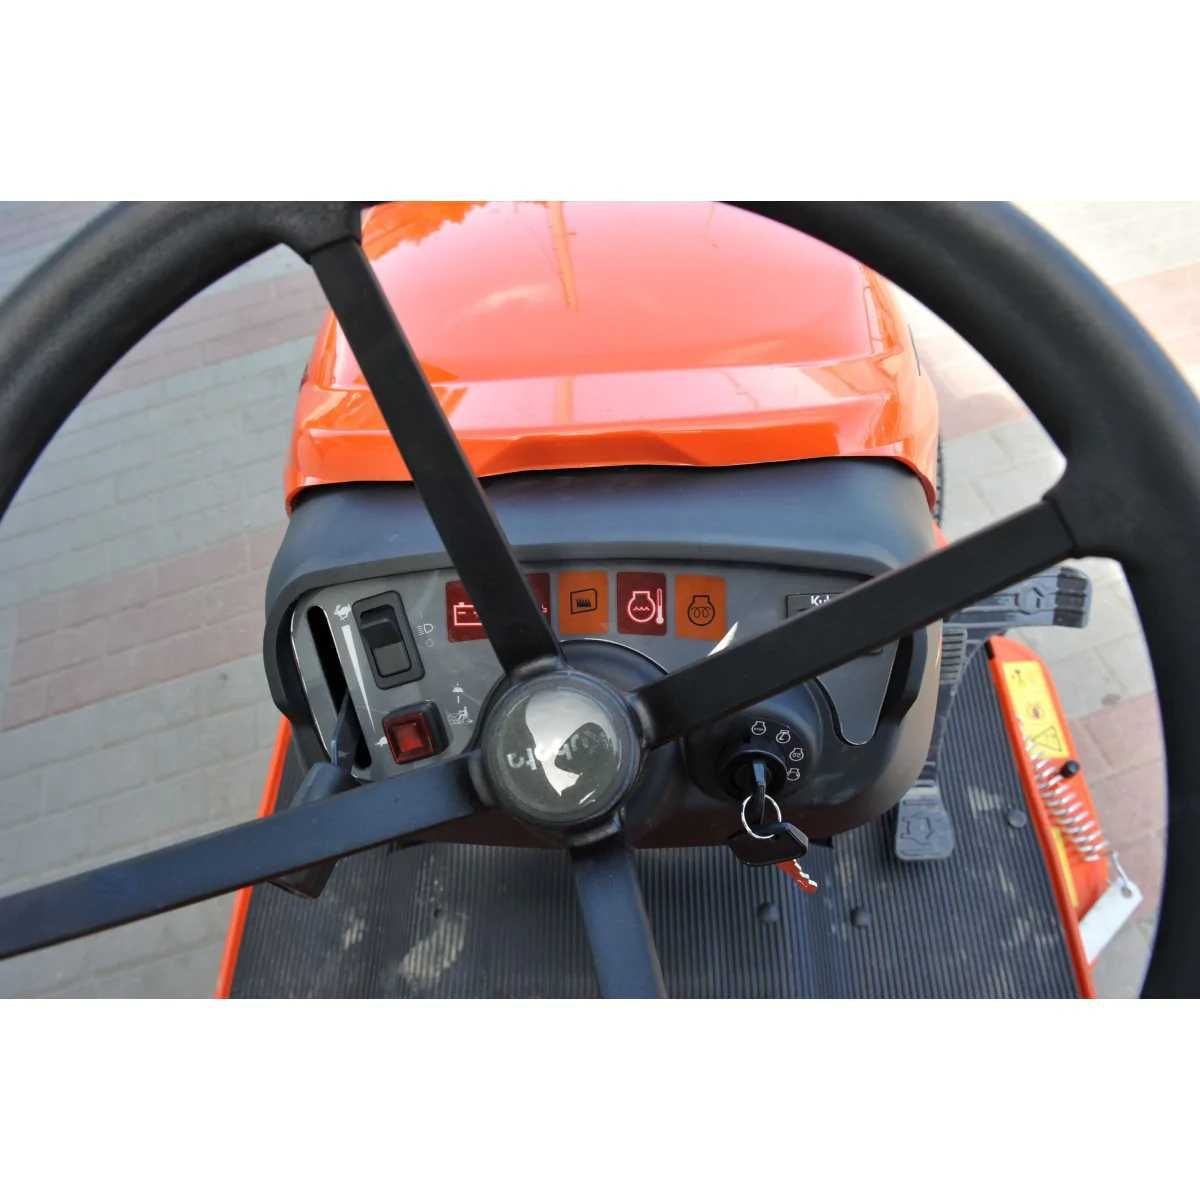 Traktorek kosiarka samojezdna KUBOTA GR 1600 - profesjonalna - DIESEL